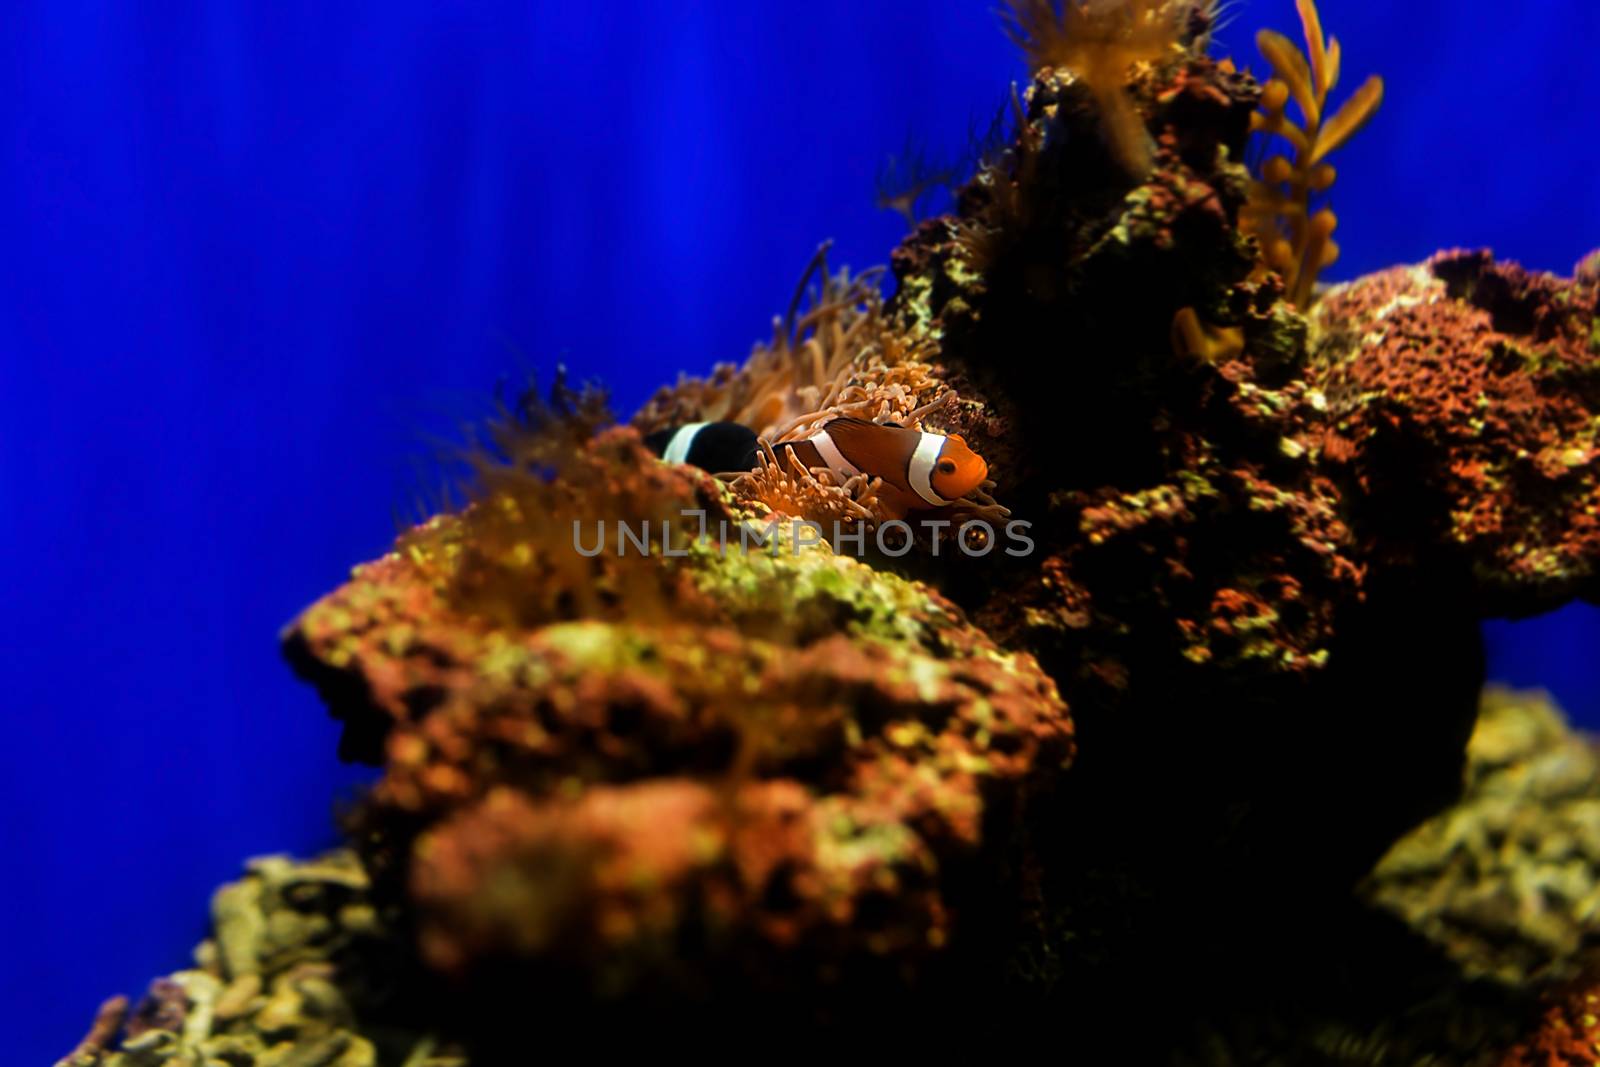 Clownfish in aquarium, Singapore